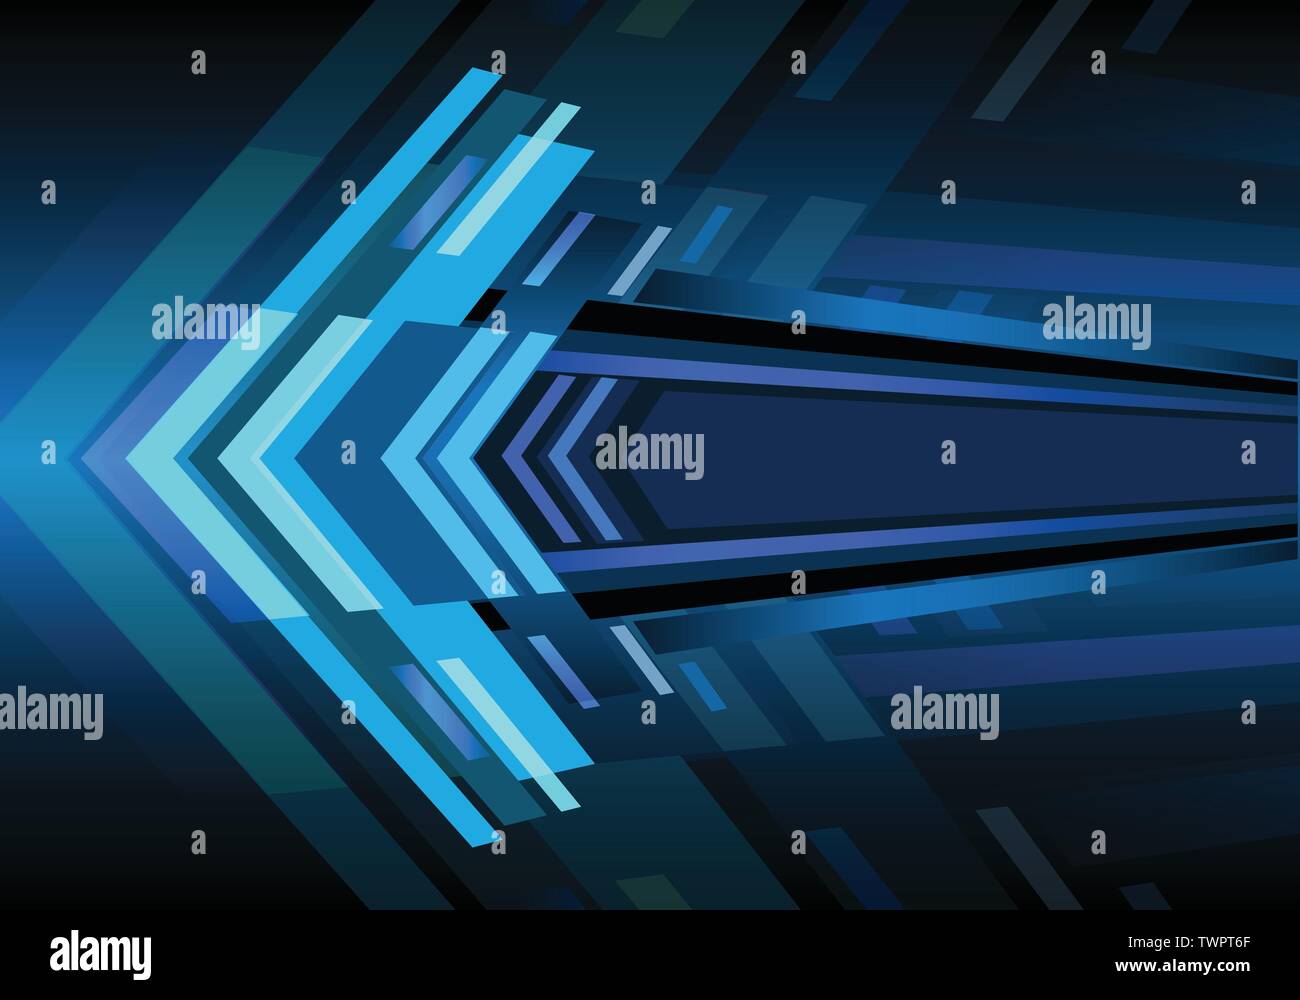 Abstract flèche bleue zoom lumière puissance vitesse moderne design futuristic background vector illustration. Illustration de Vecteur